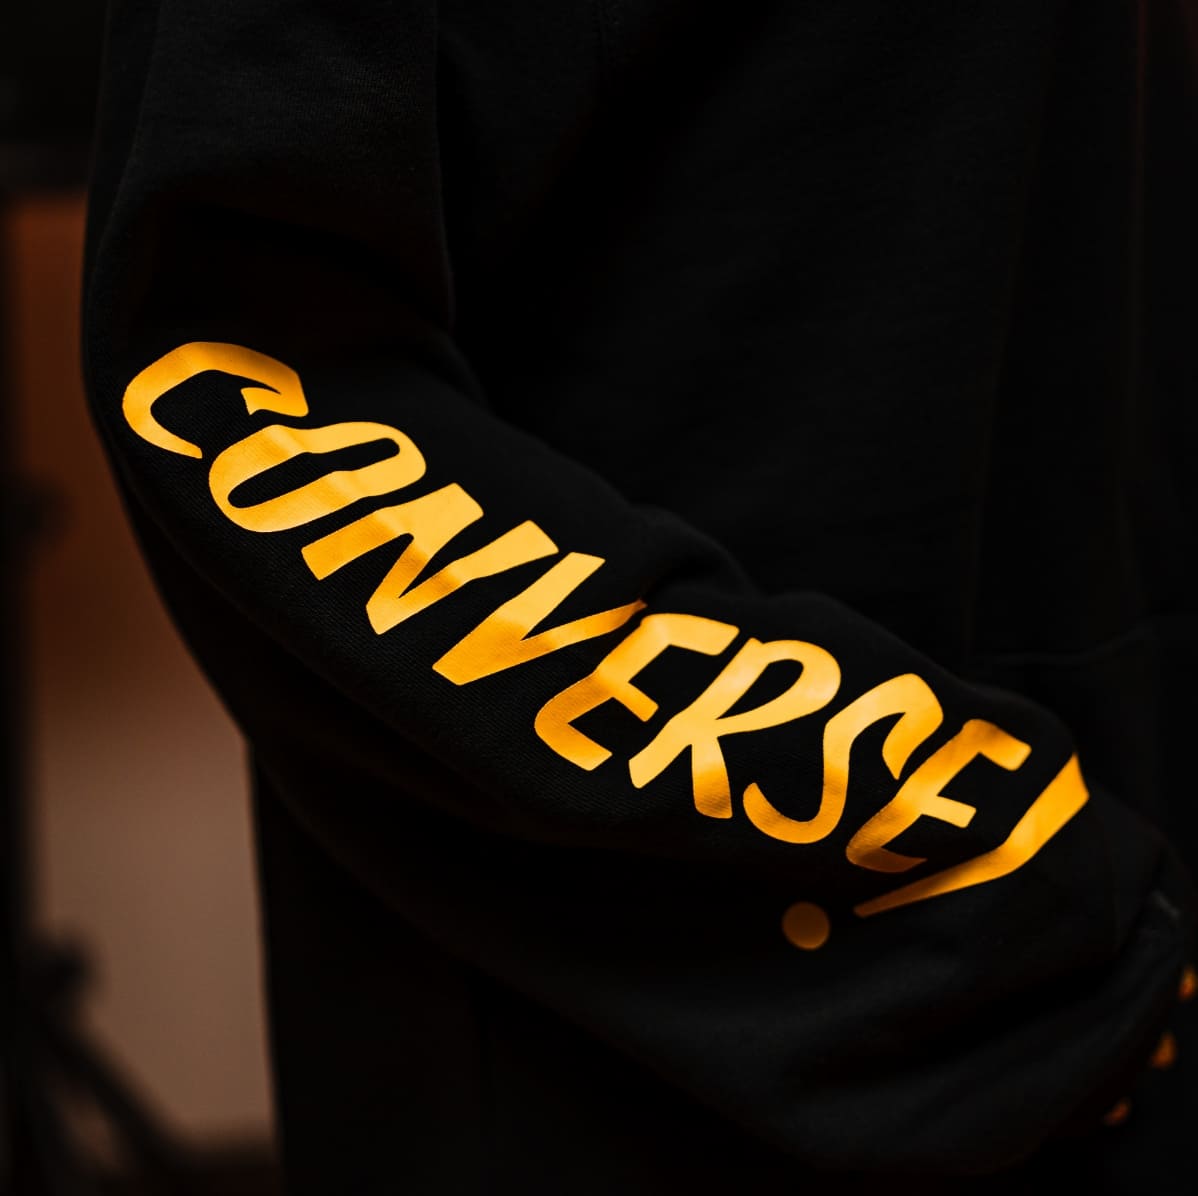 Buzo negro con la inscripción "Converse" en color amarillo.